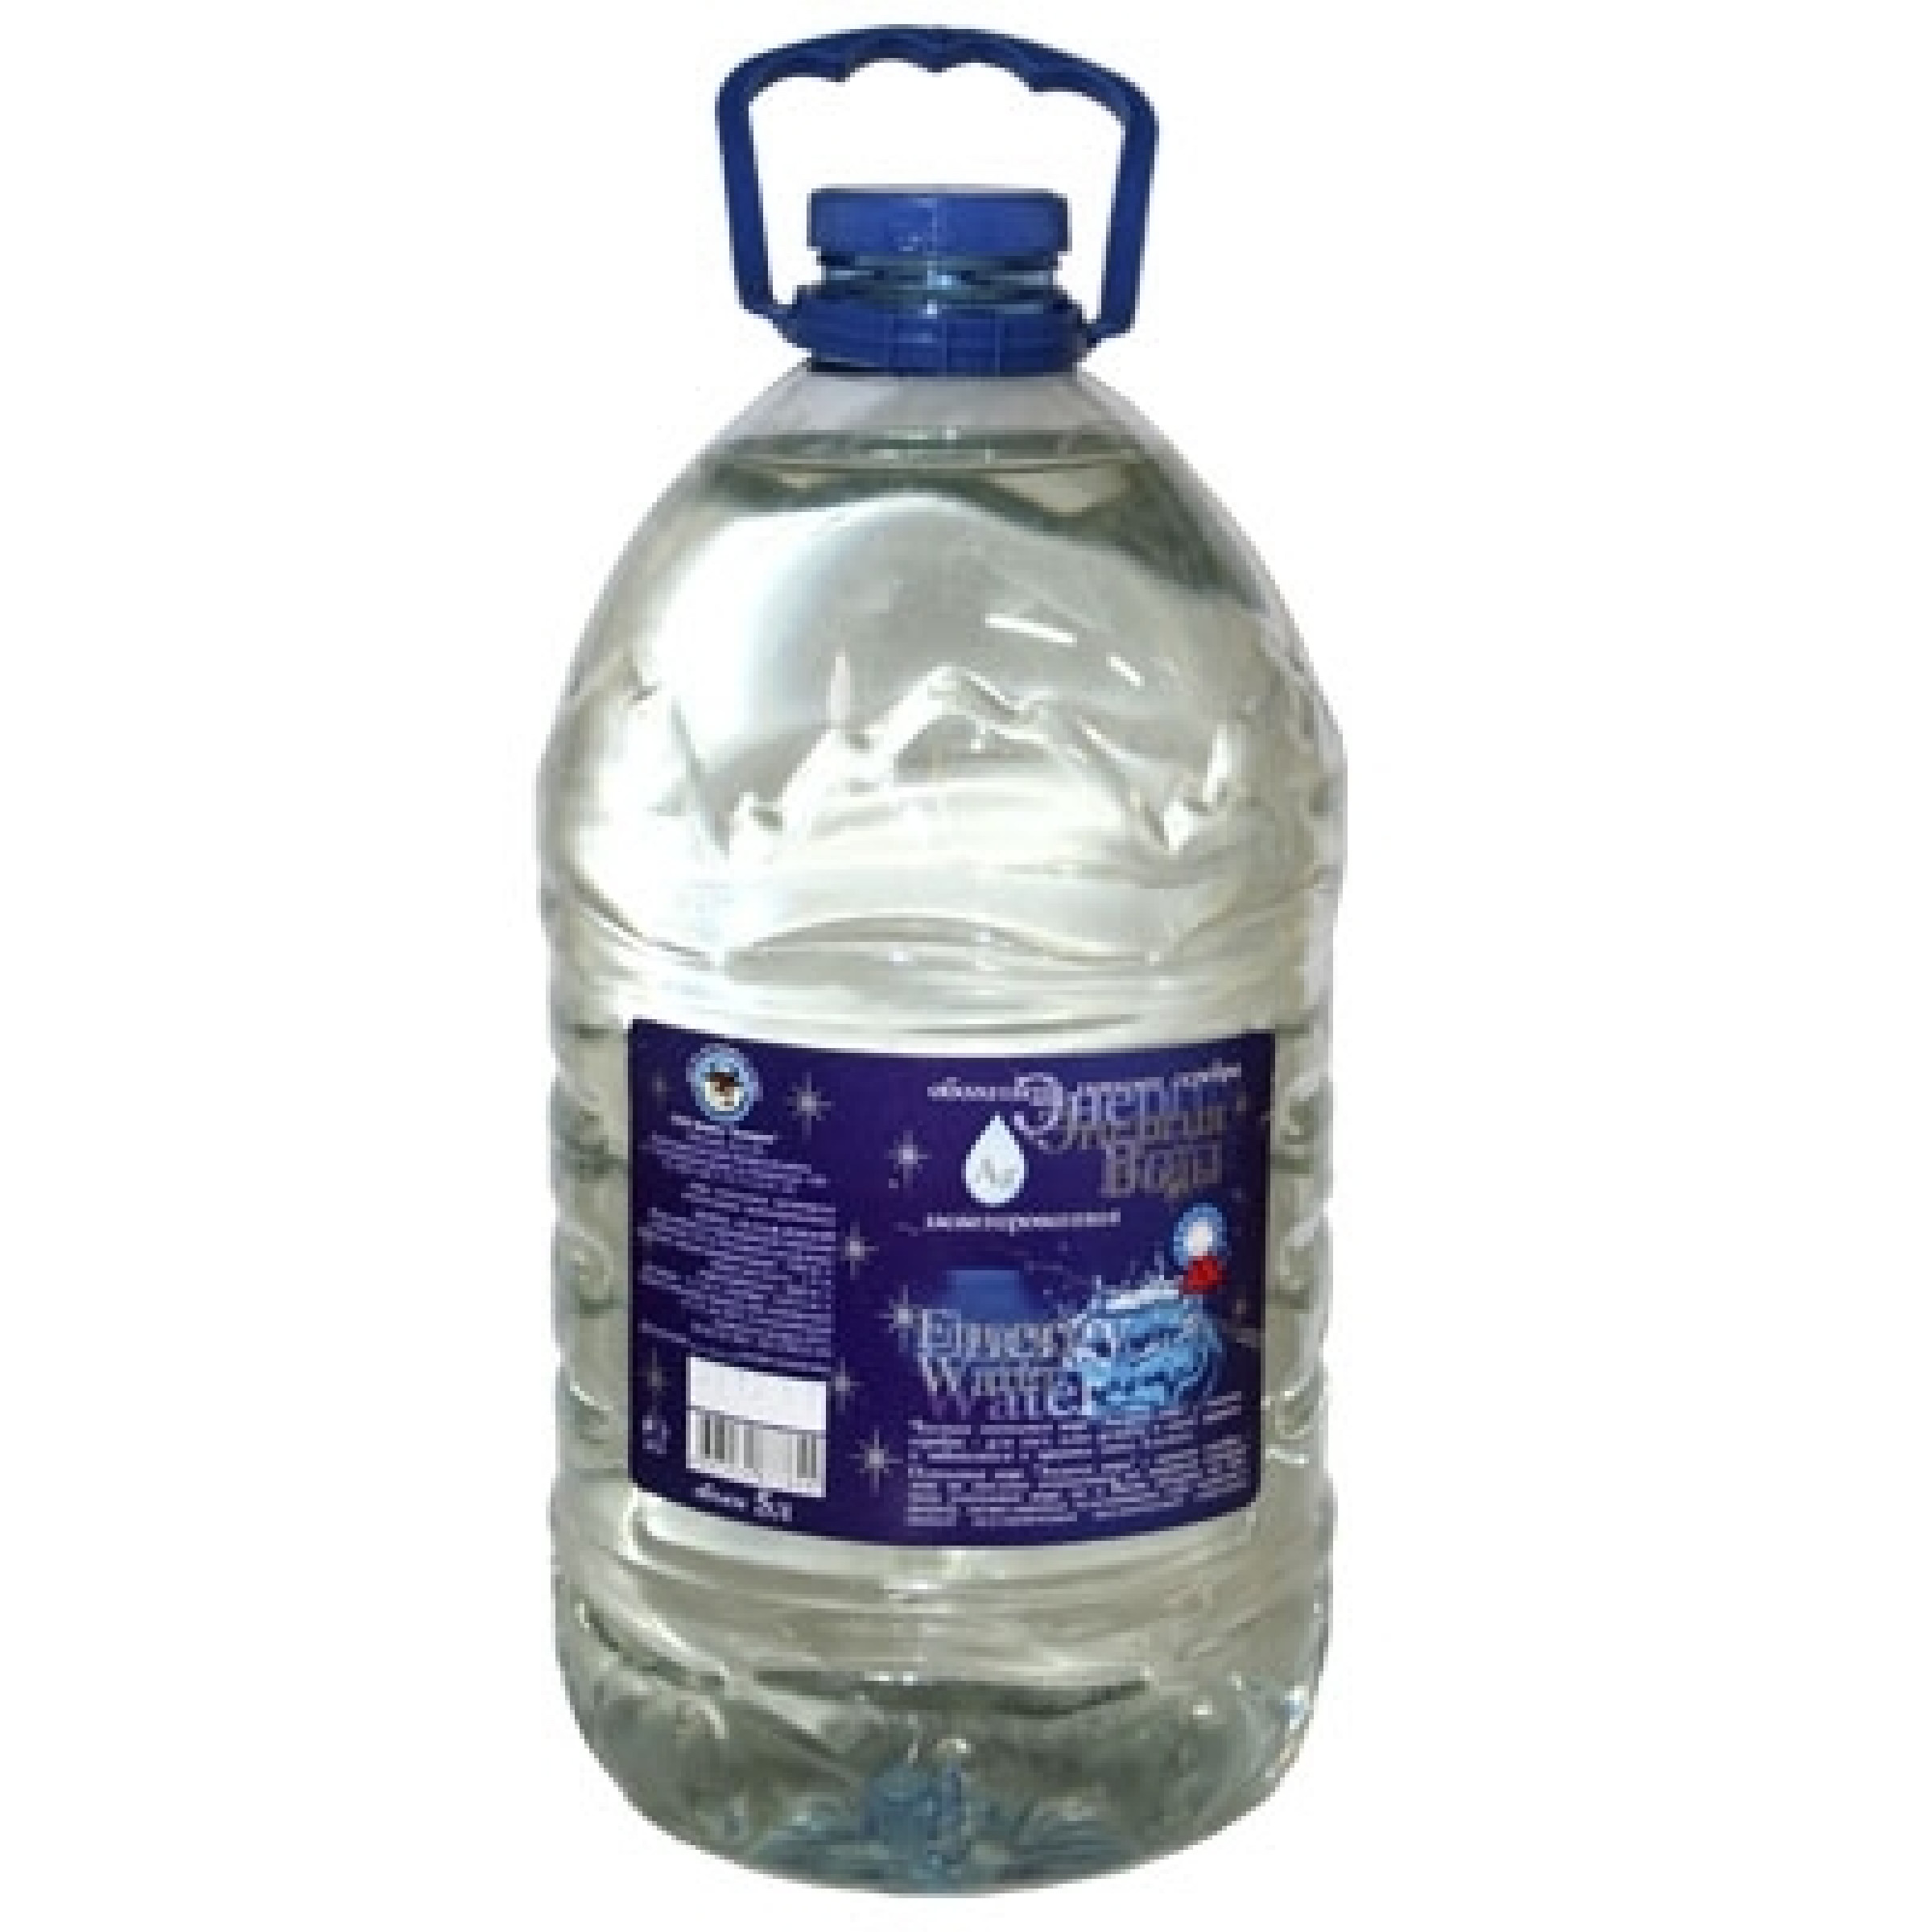 Вода с ионами серебра Энергия вода, 5 л